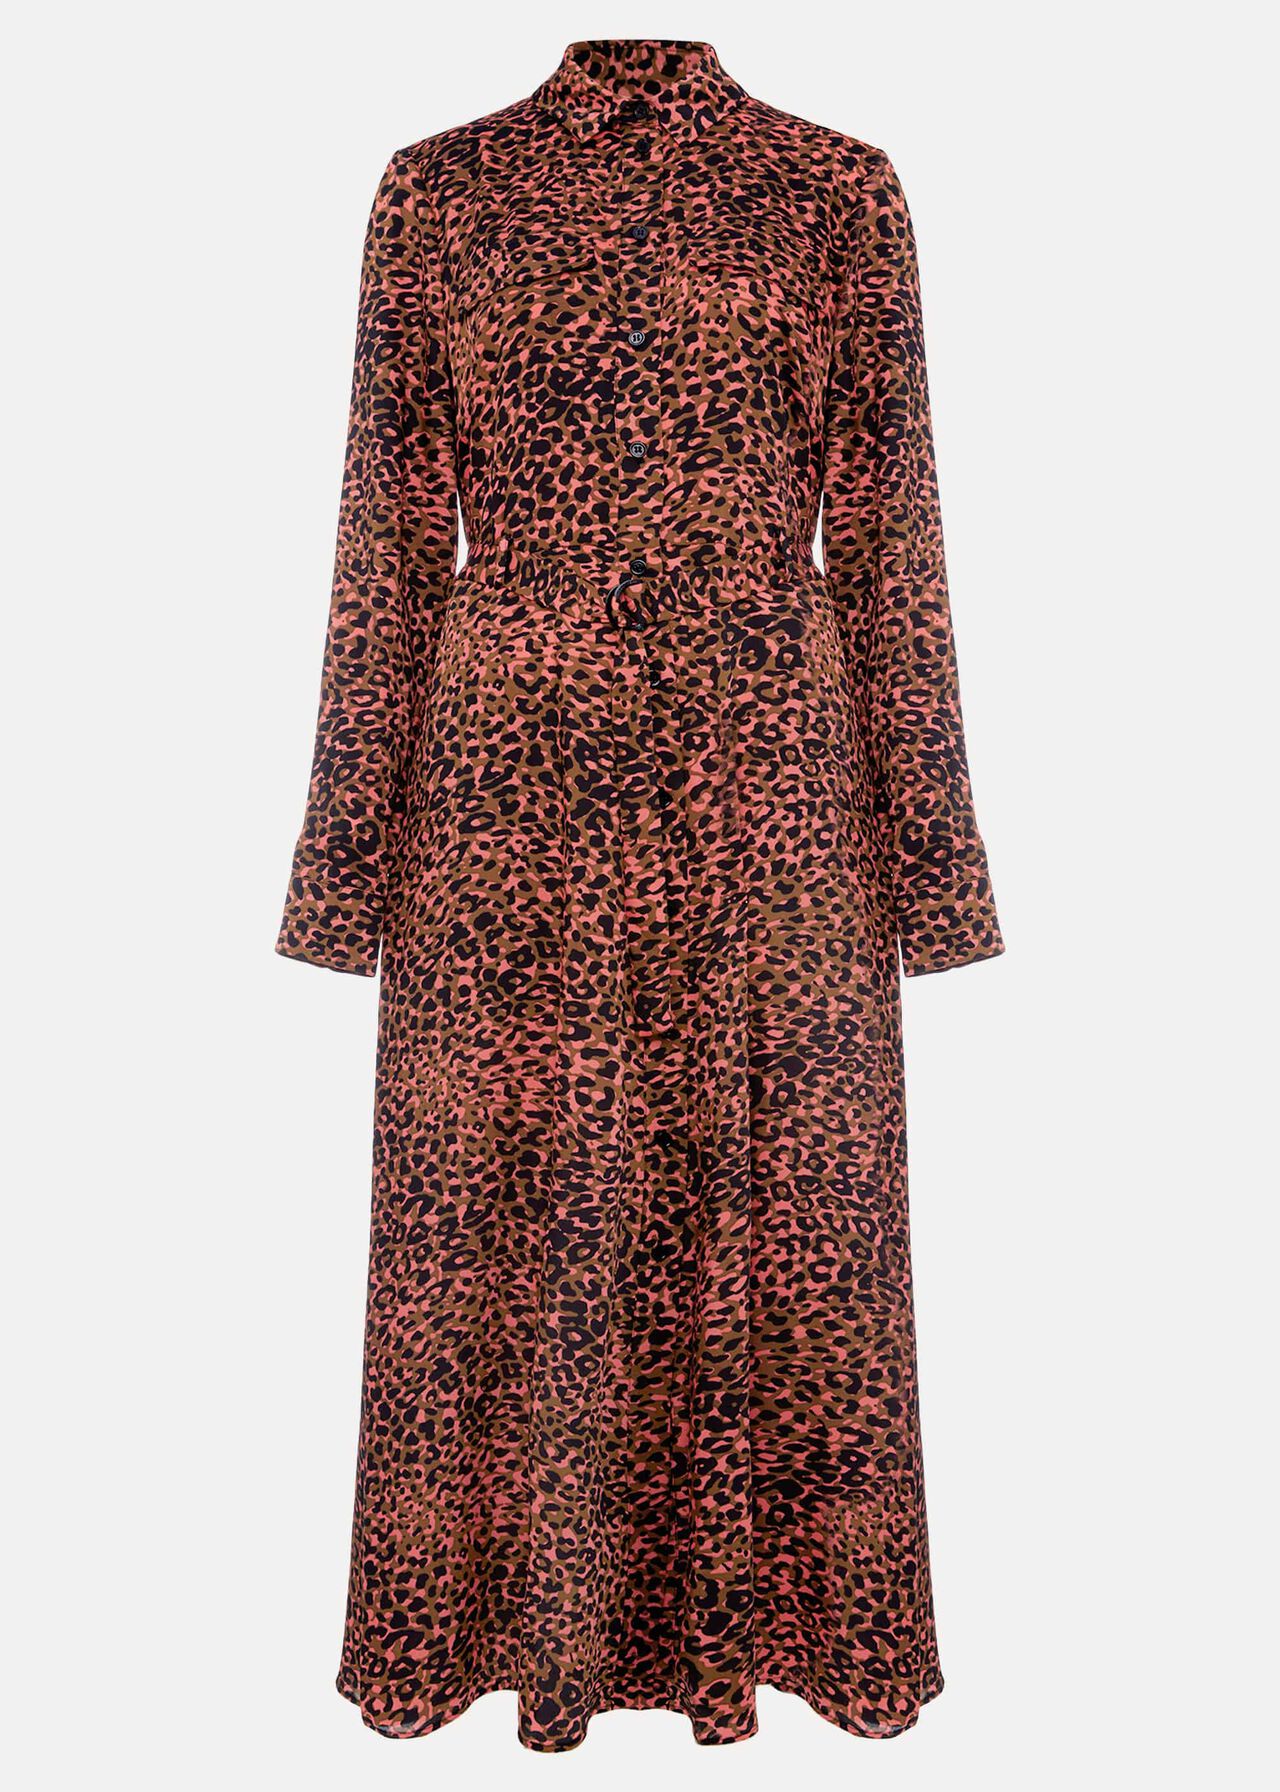 Mayumi Leopard Dress